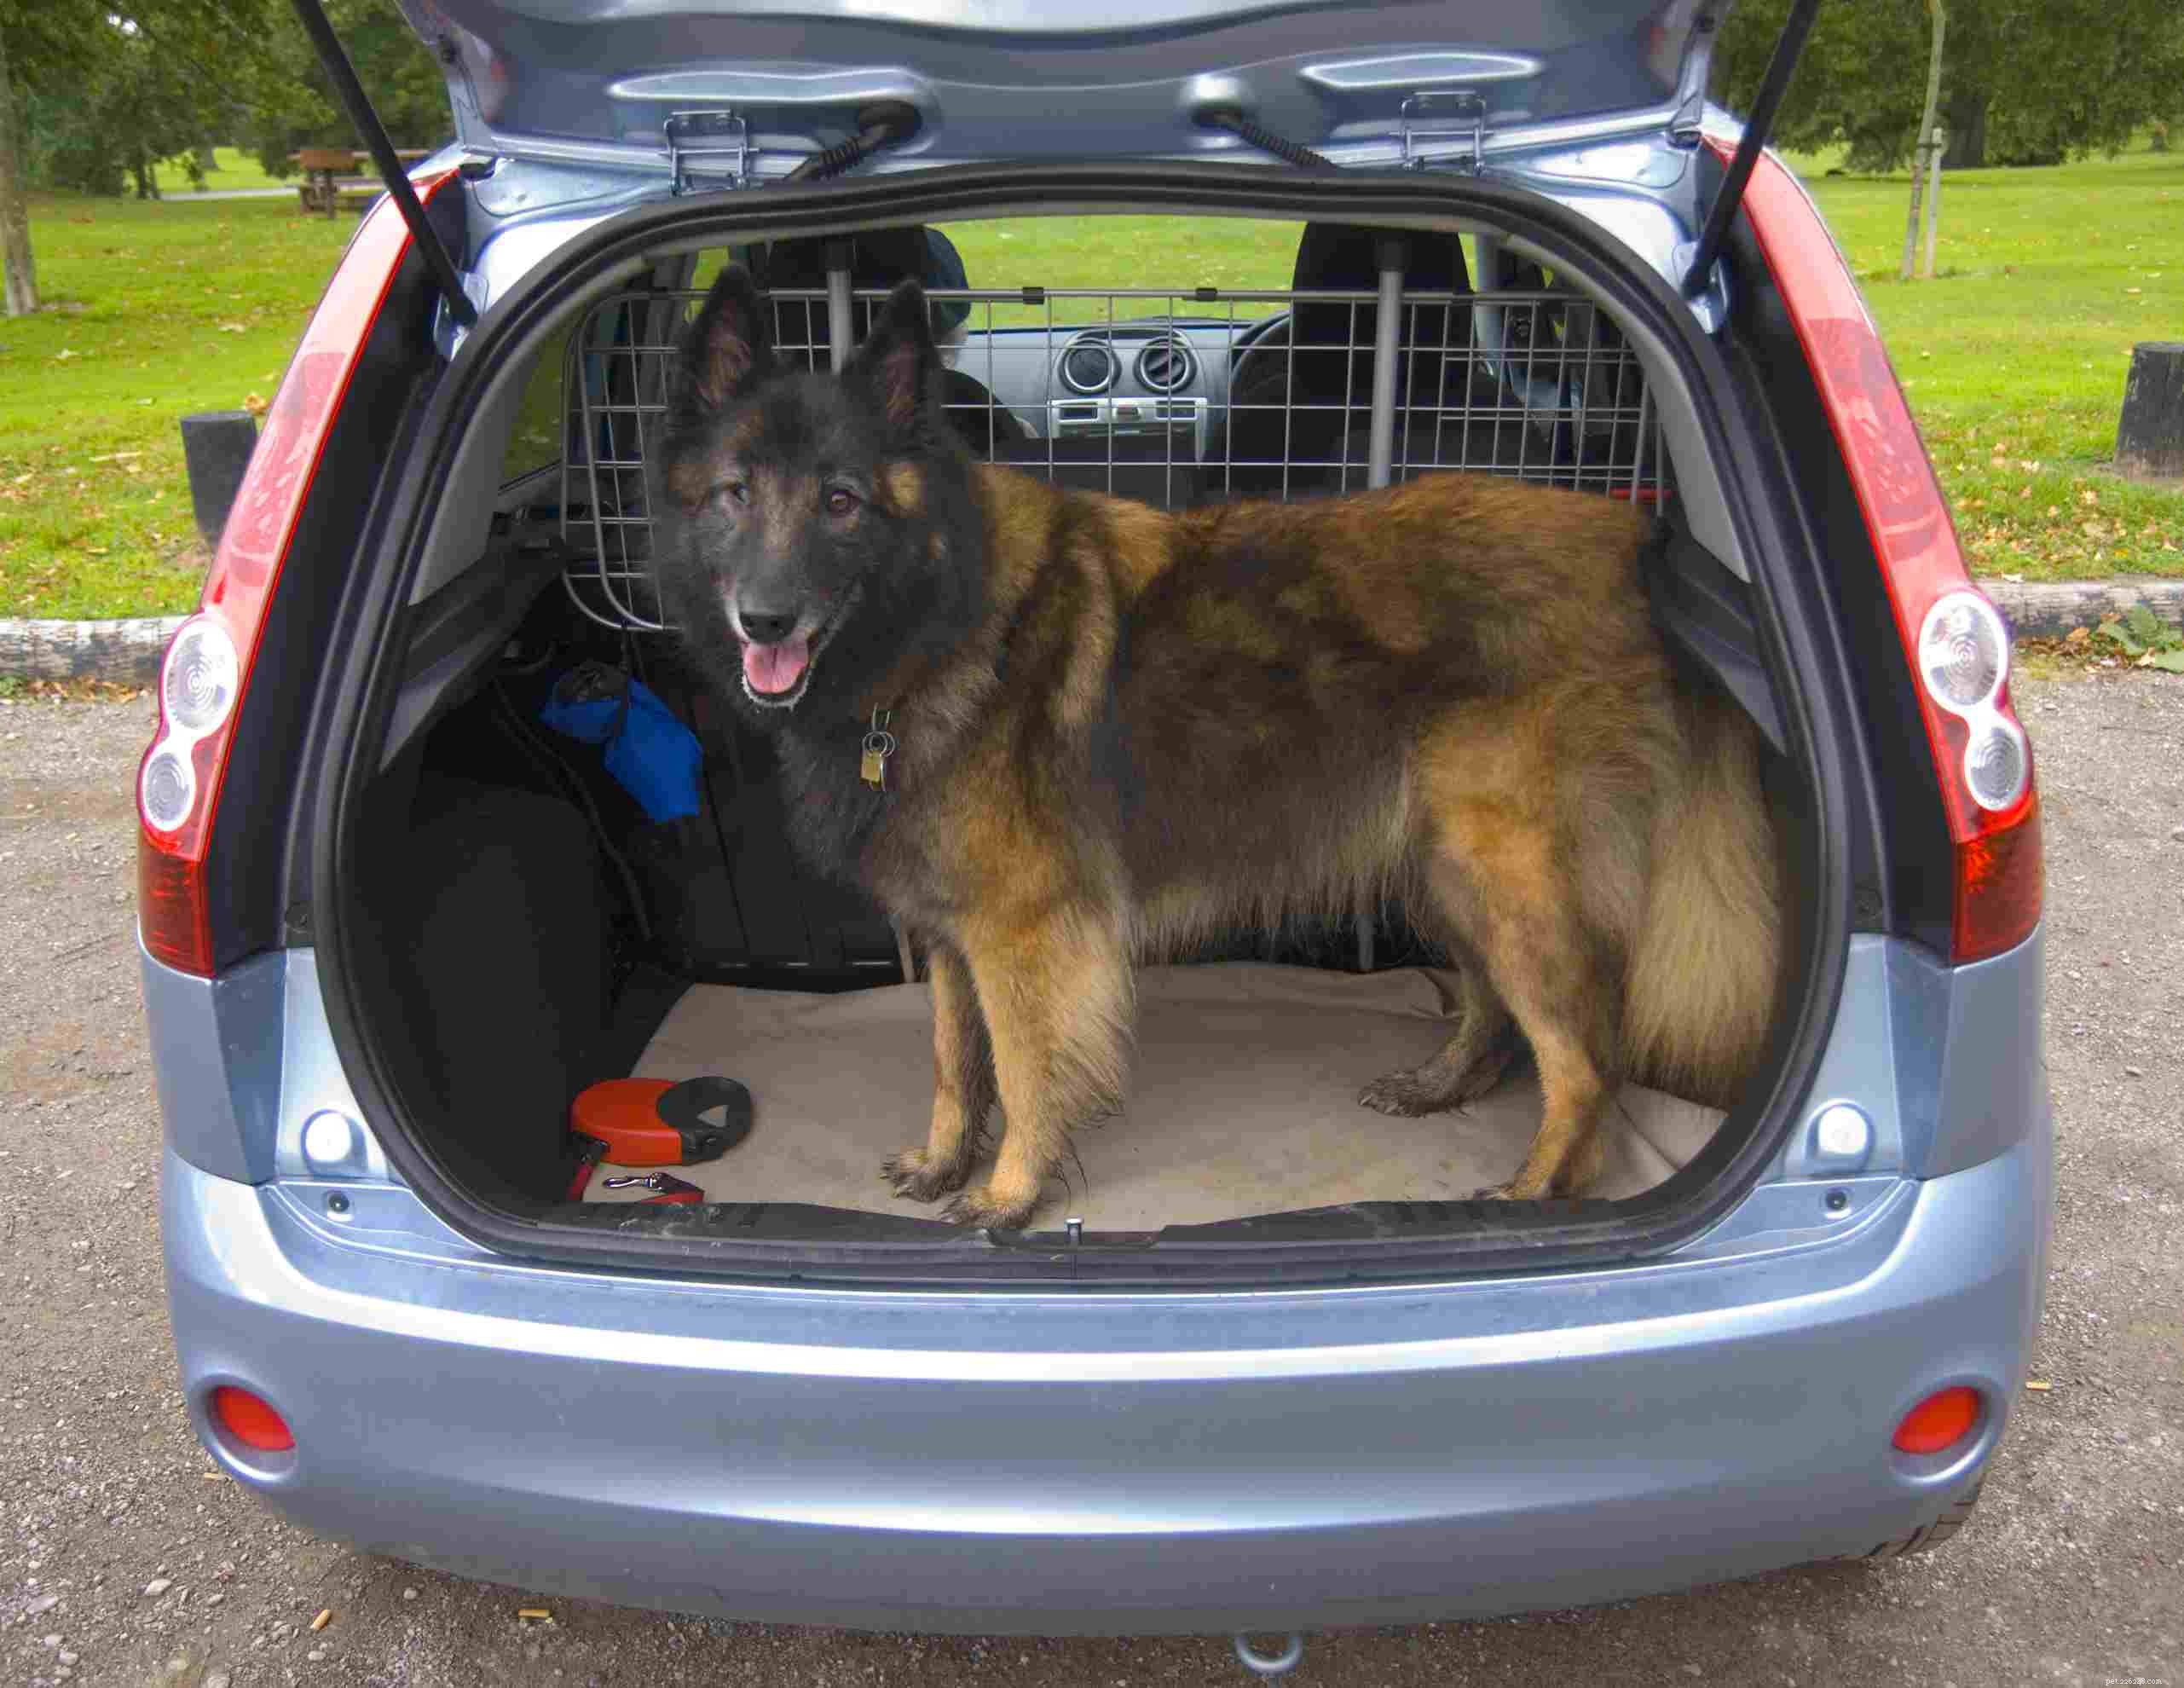 Meilleur moyen de retenir un chien dans votre voiture pour plus de sécurité